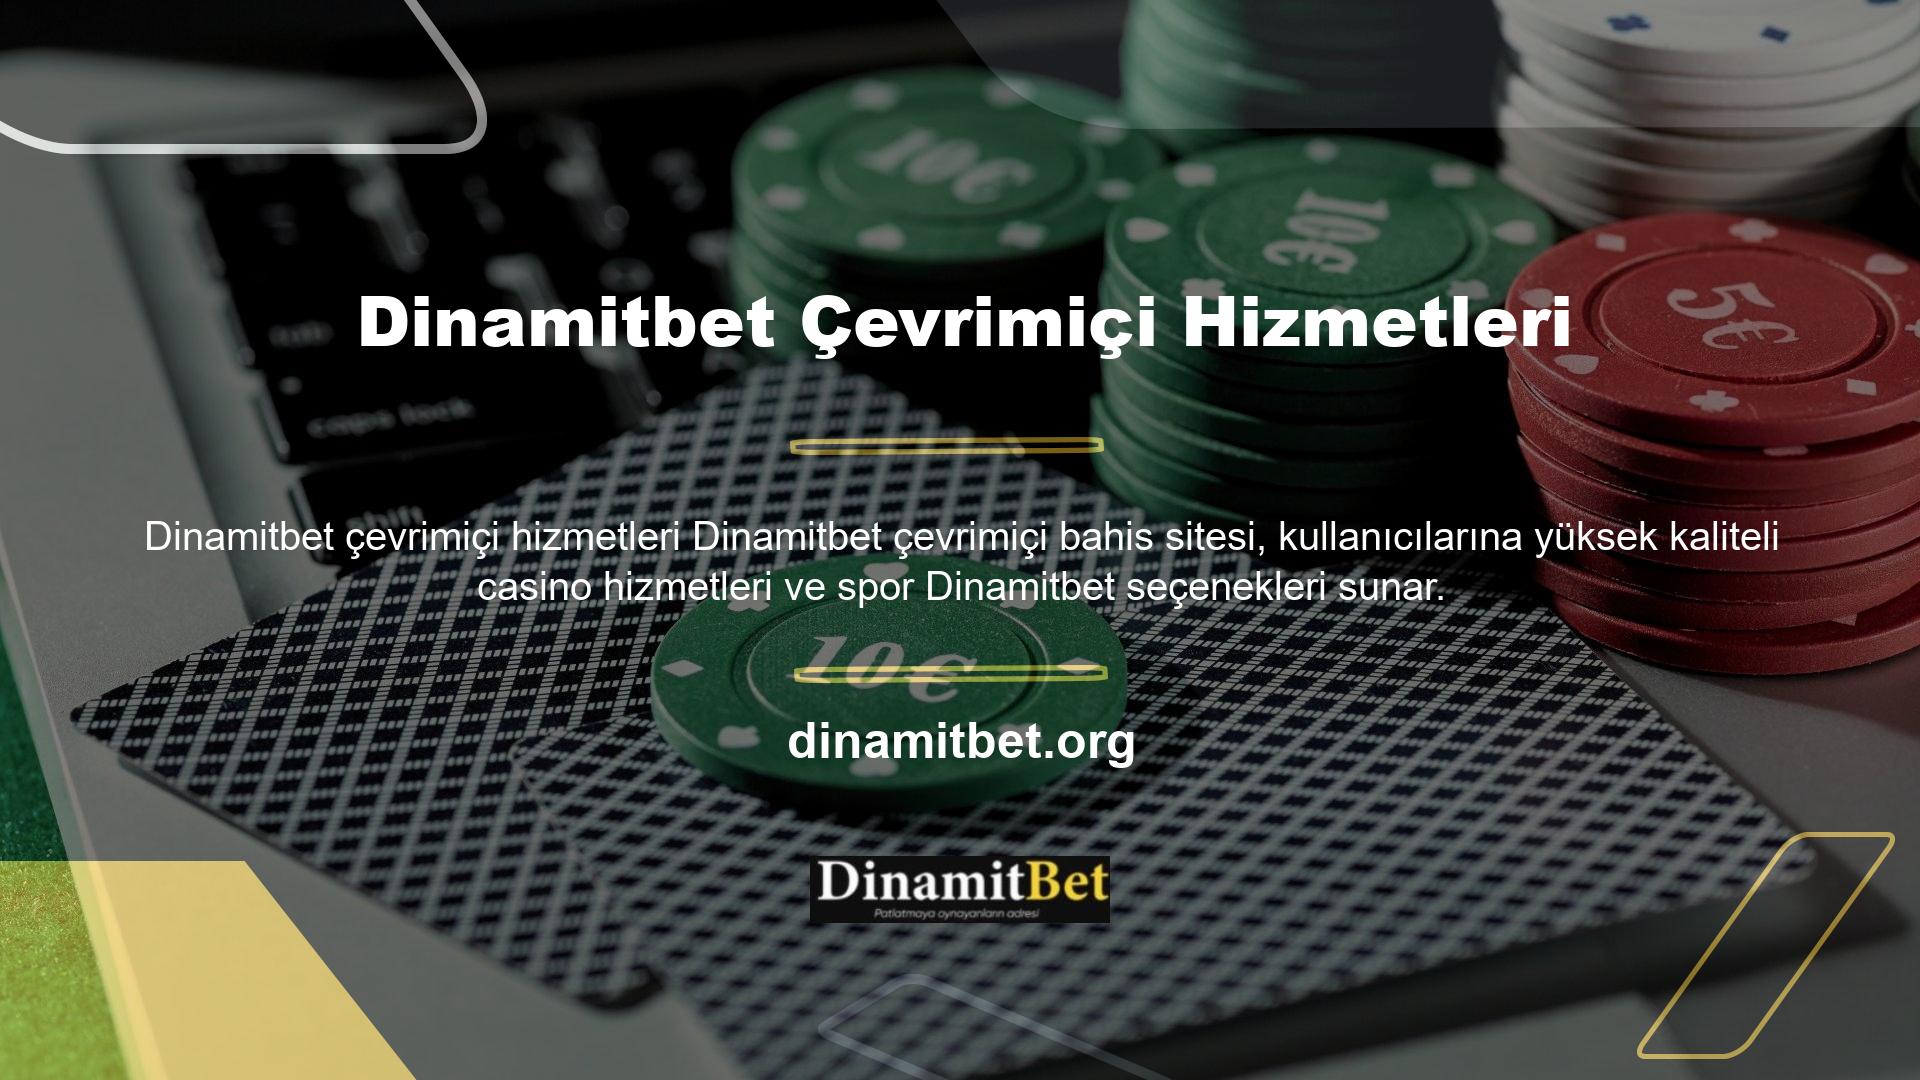 Dinamitbet, dünyanın önde gelen oyun sağlayıcısı web sitesinde karlı ve güvenilir casino oyunları sunarak kullanıcılara güvenilir ve keyifli bir deneyim sunabilmektedir